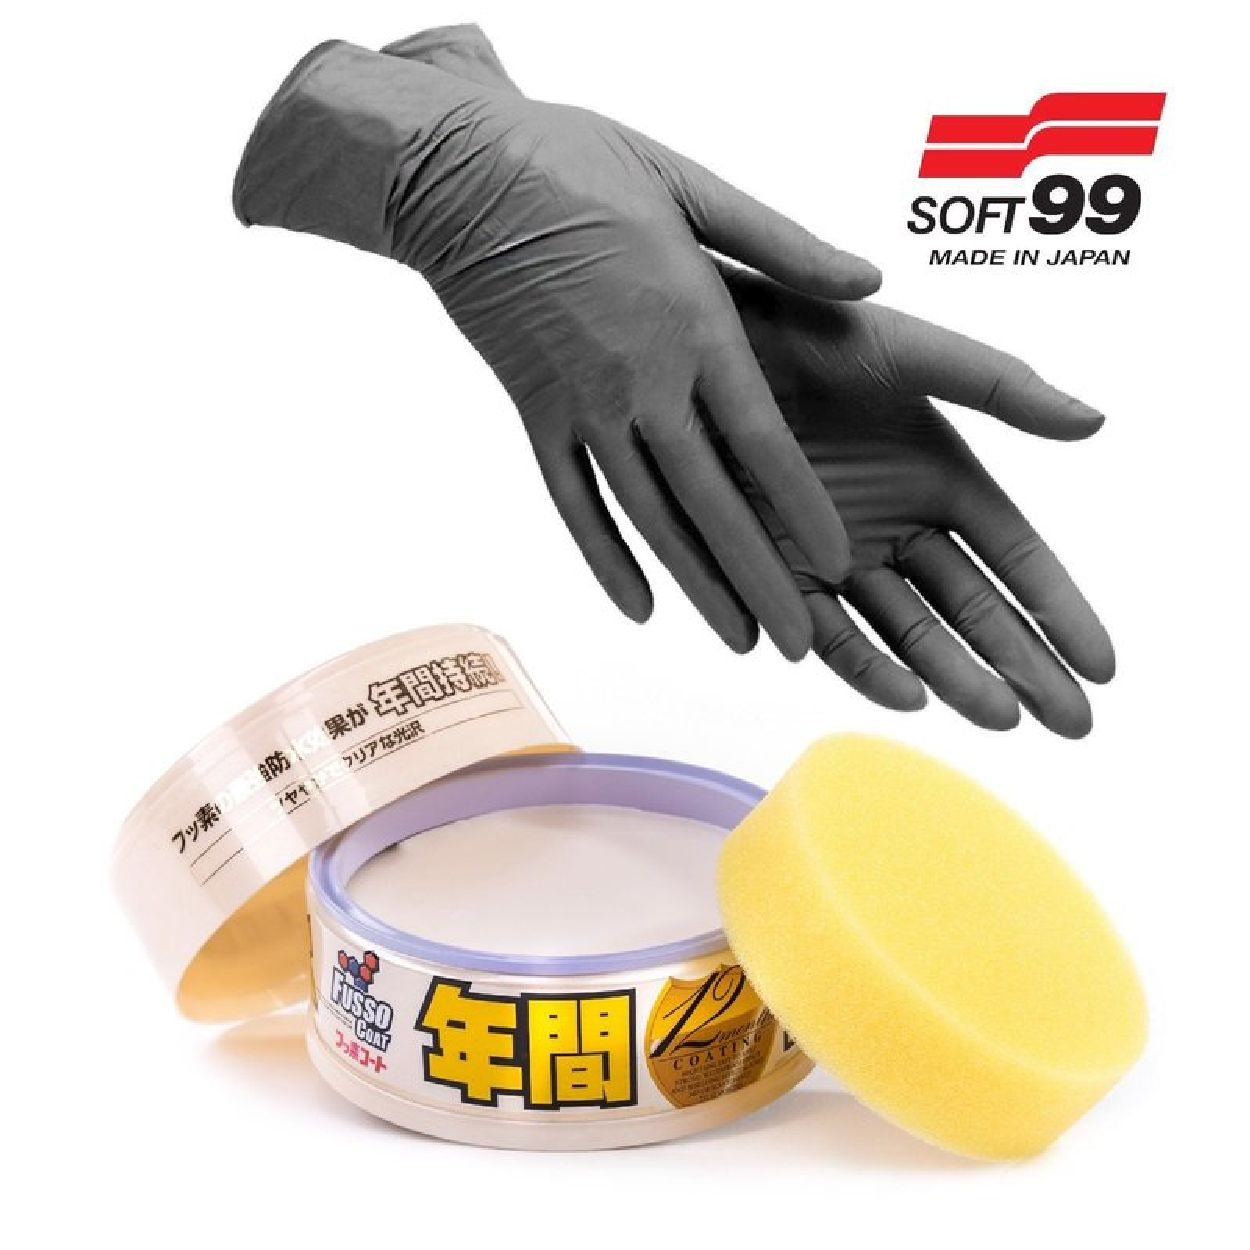 INBUSCO / KUBIS Soft99 Versiegelung + Transparent Autopflege, 00298 Handschuhe-12M light